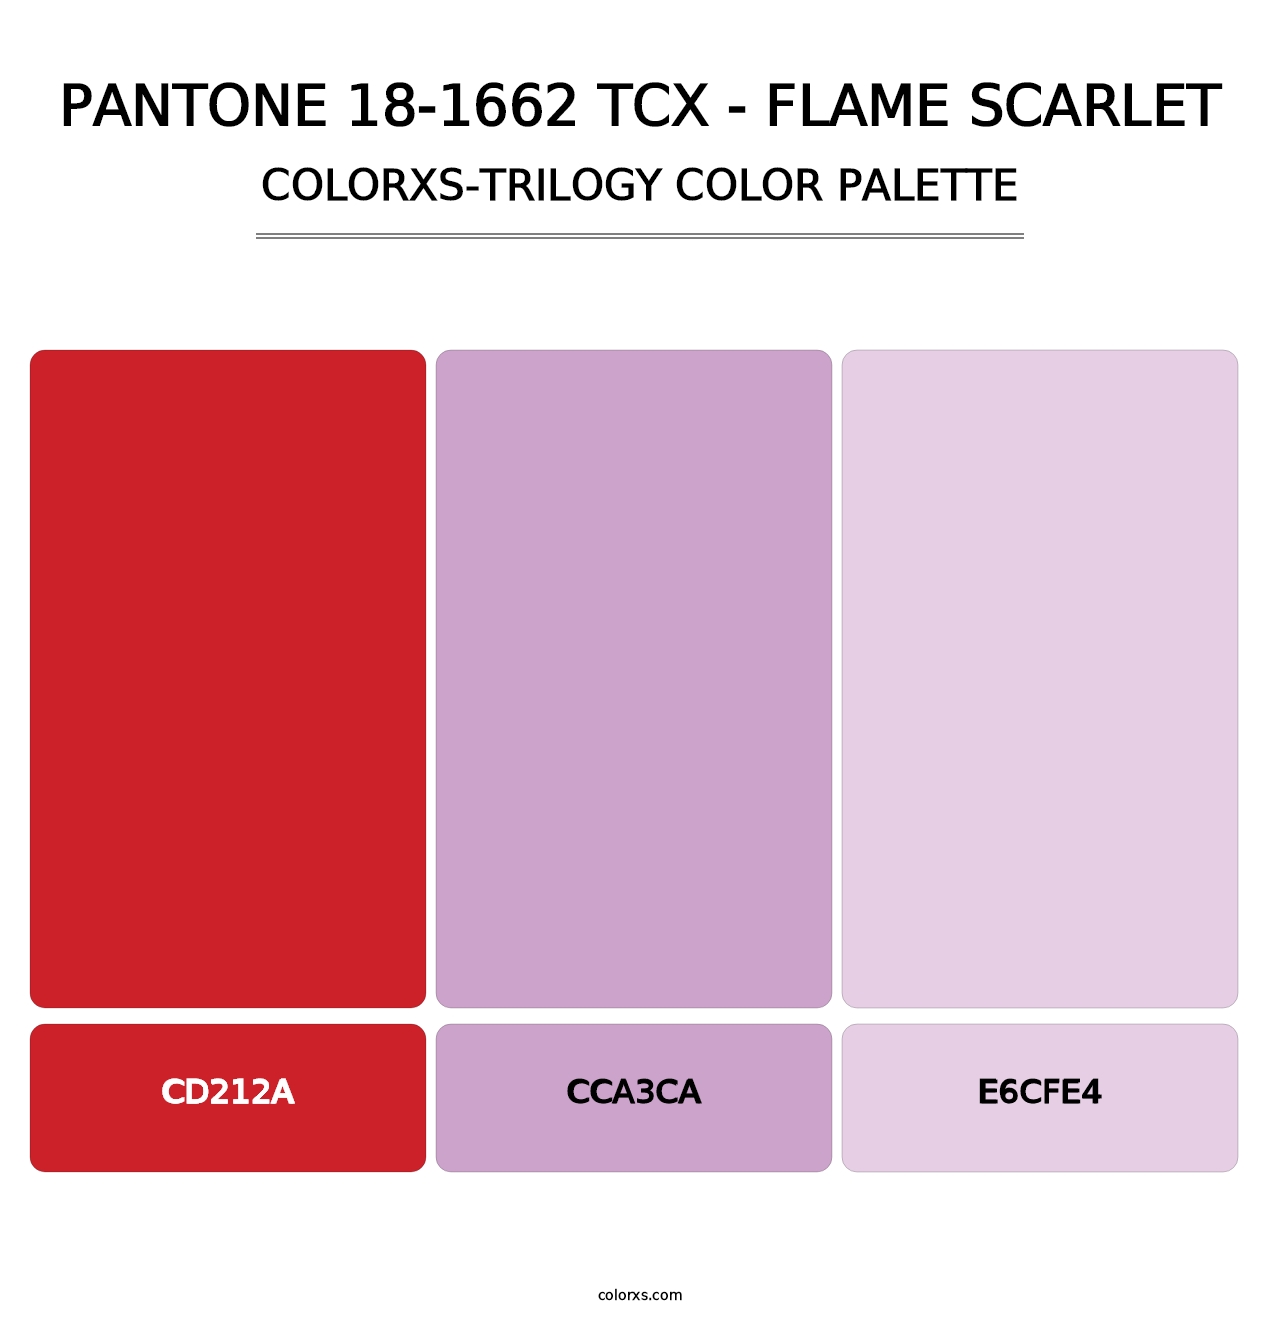 PANTONE 18-1662 TCX - Flame Scarlet - Colorxs Trilogy Palette